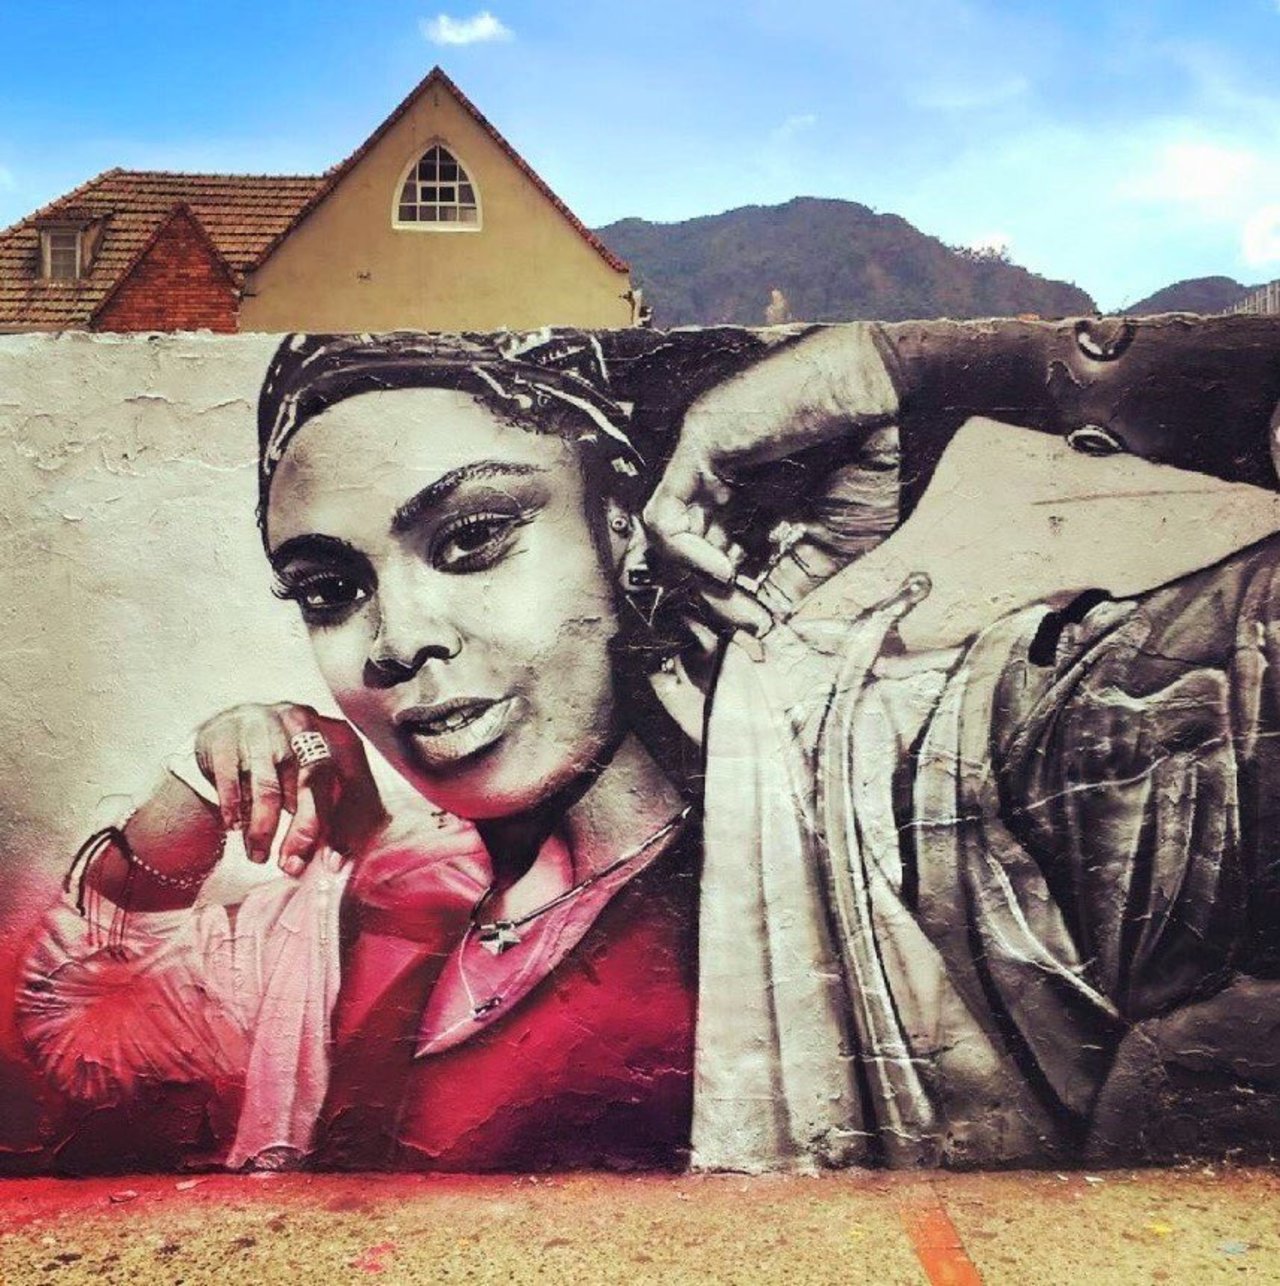 New Street Art by Dexs found in Bogota Colombia #art #graffiti #mural #streetart https://t.co/ygFMsFo1Sh